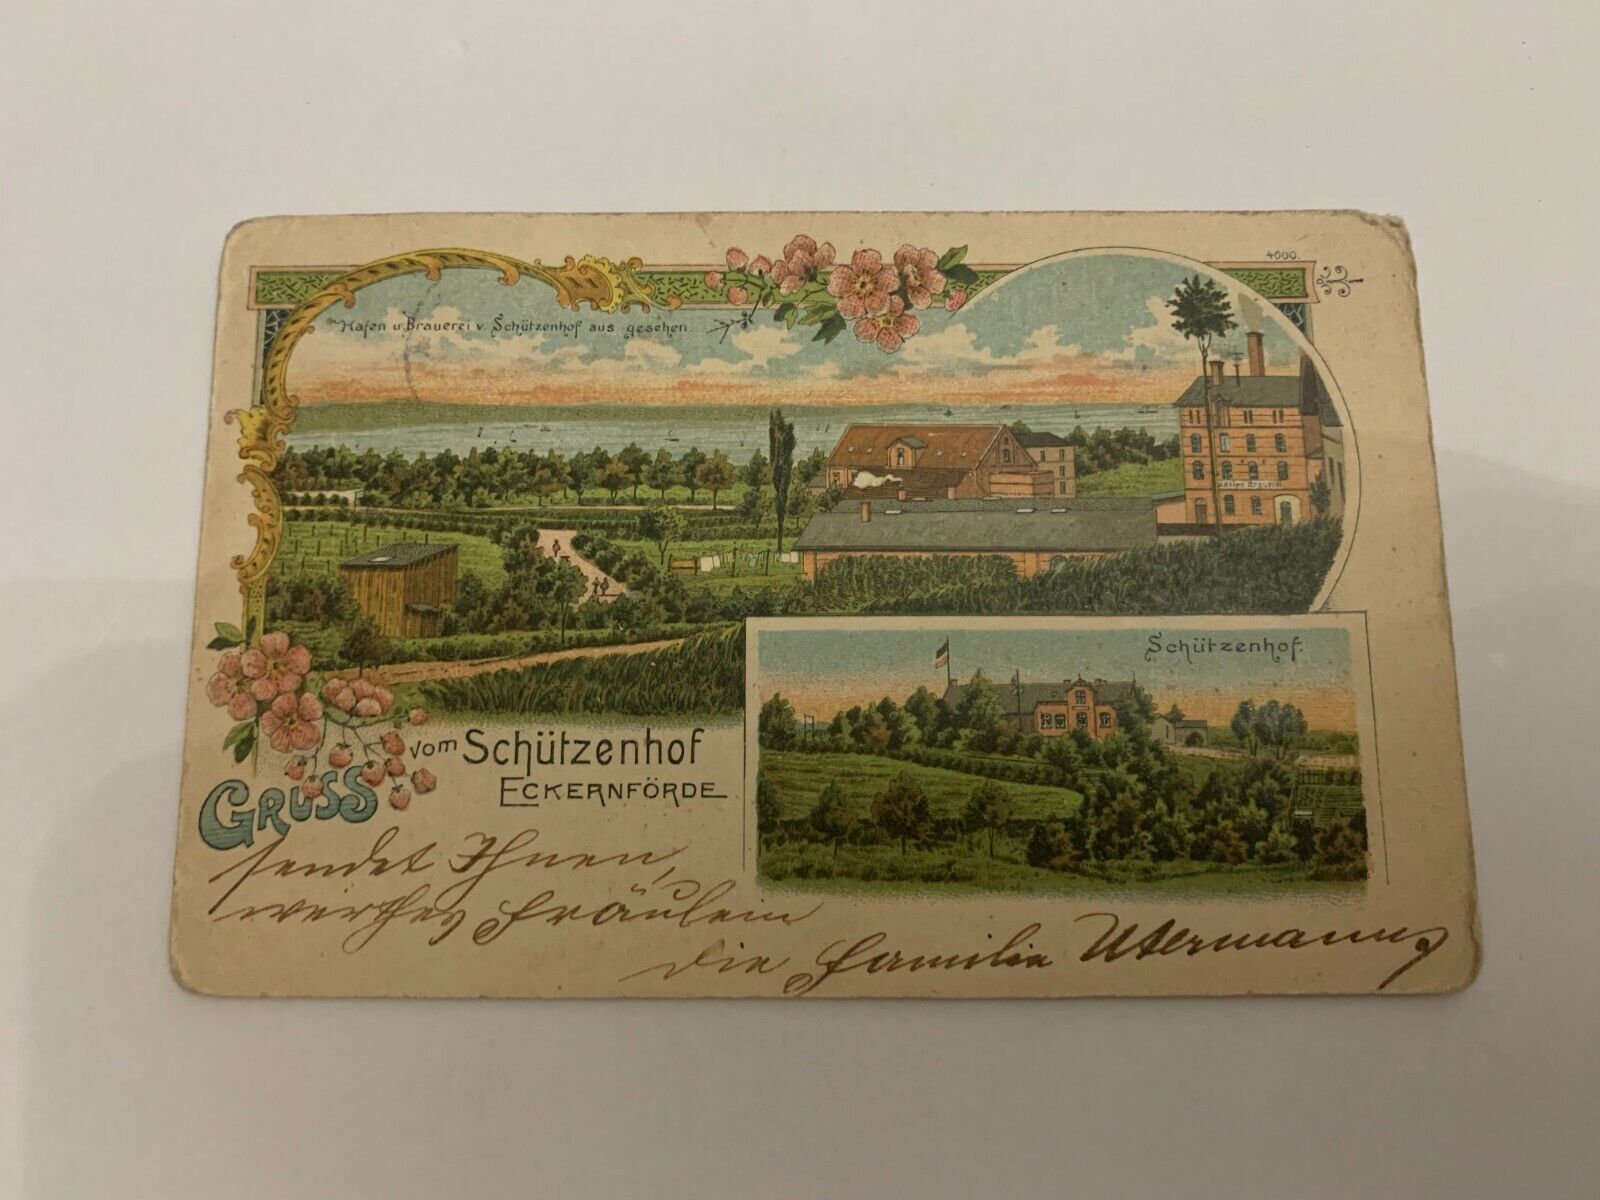 c.1900 Gruss vom Schützenhof Eckernförde Germany Postcard